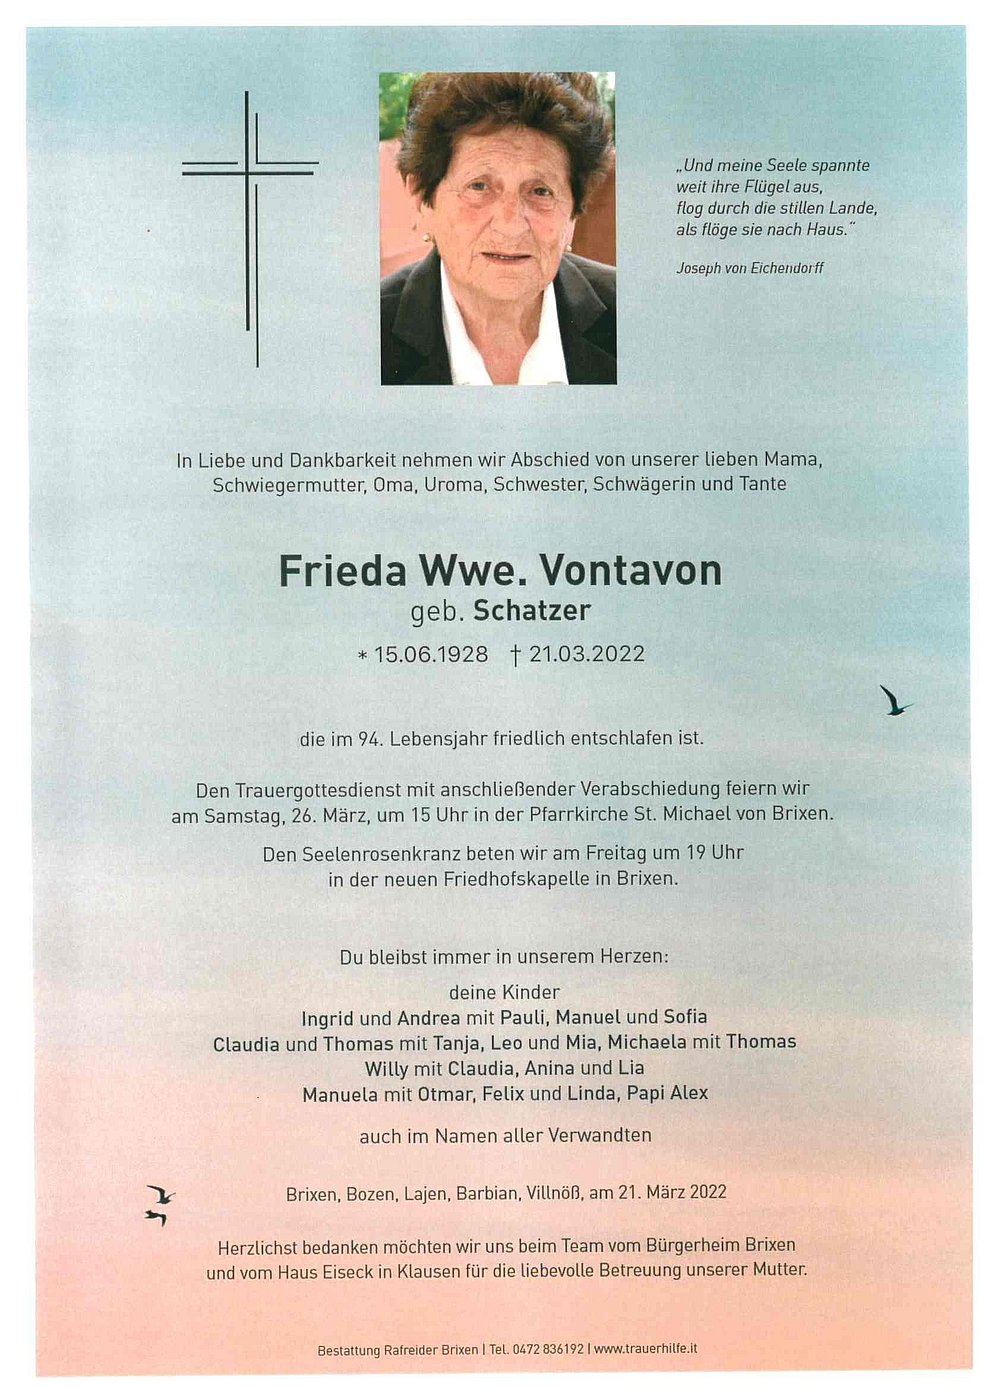 Frieda Wwe Vontavon Aus Brixen Trauerhilfeit Das Südtiroler Gedenkportal 